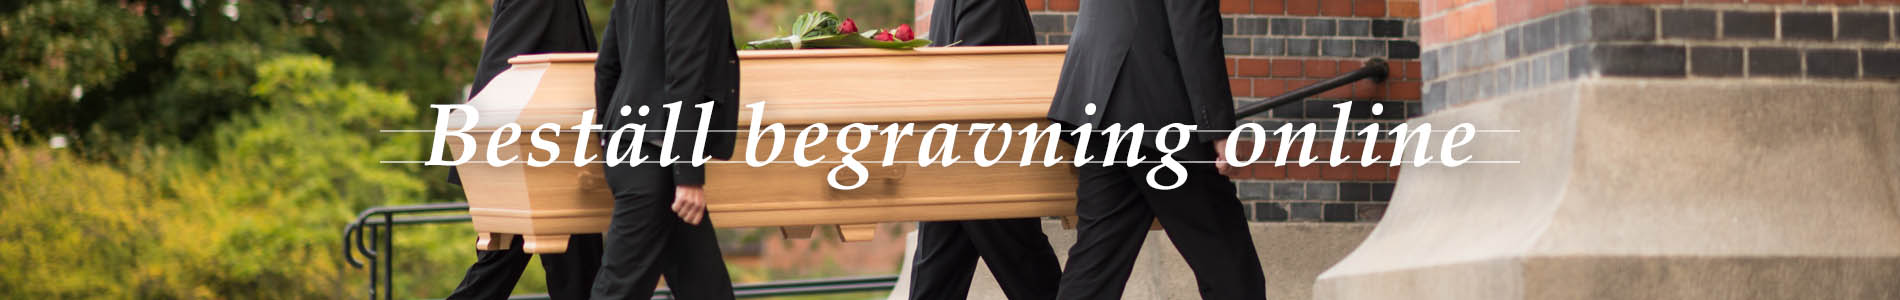 Axelssons Begravningsbyrå Dalby: Beställ begravning online